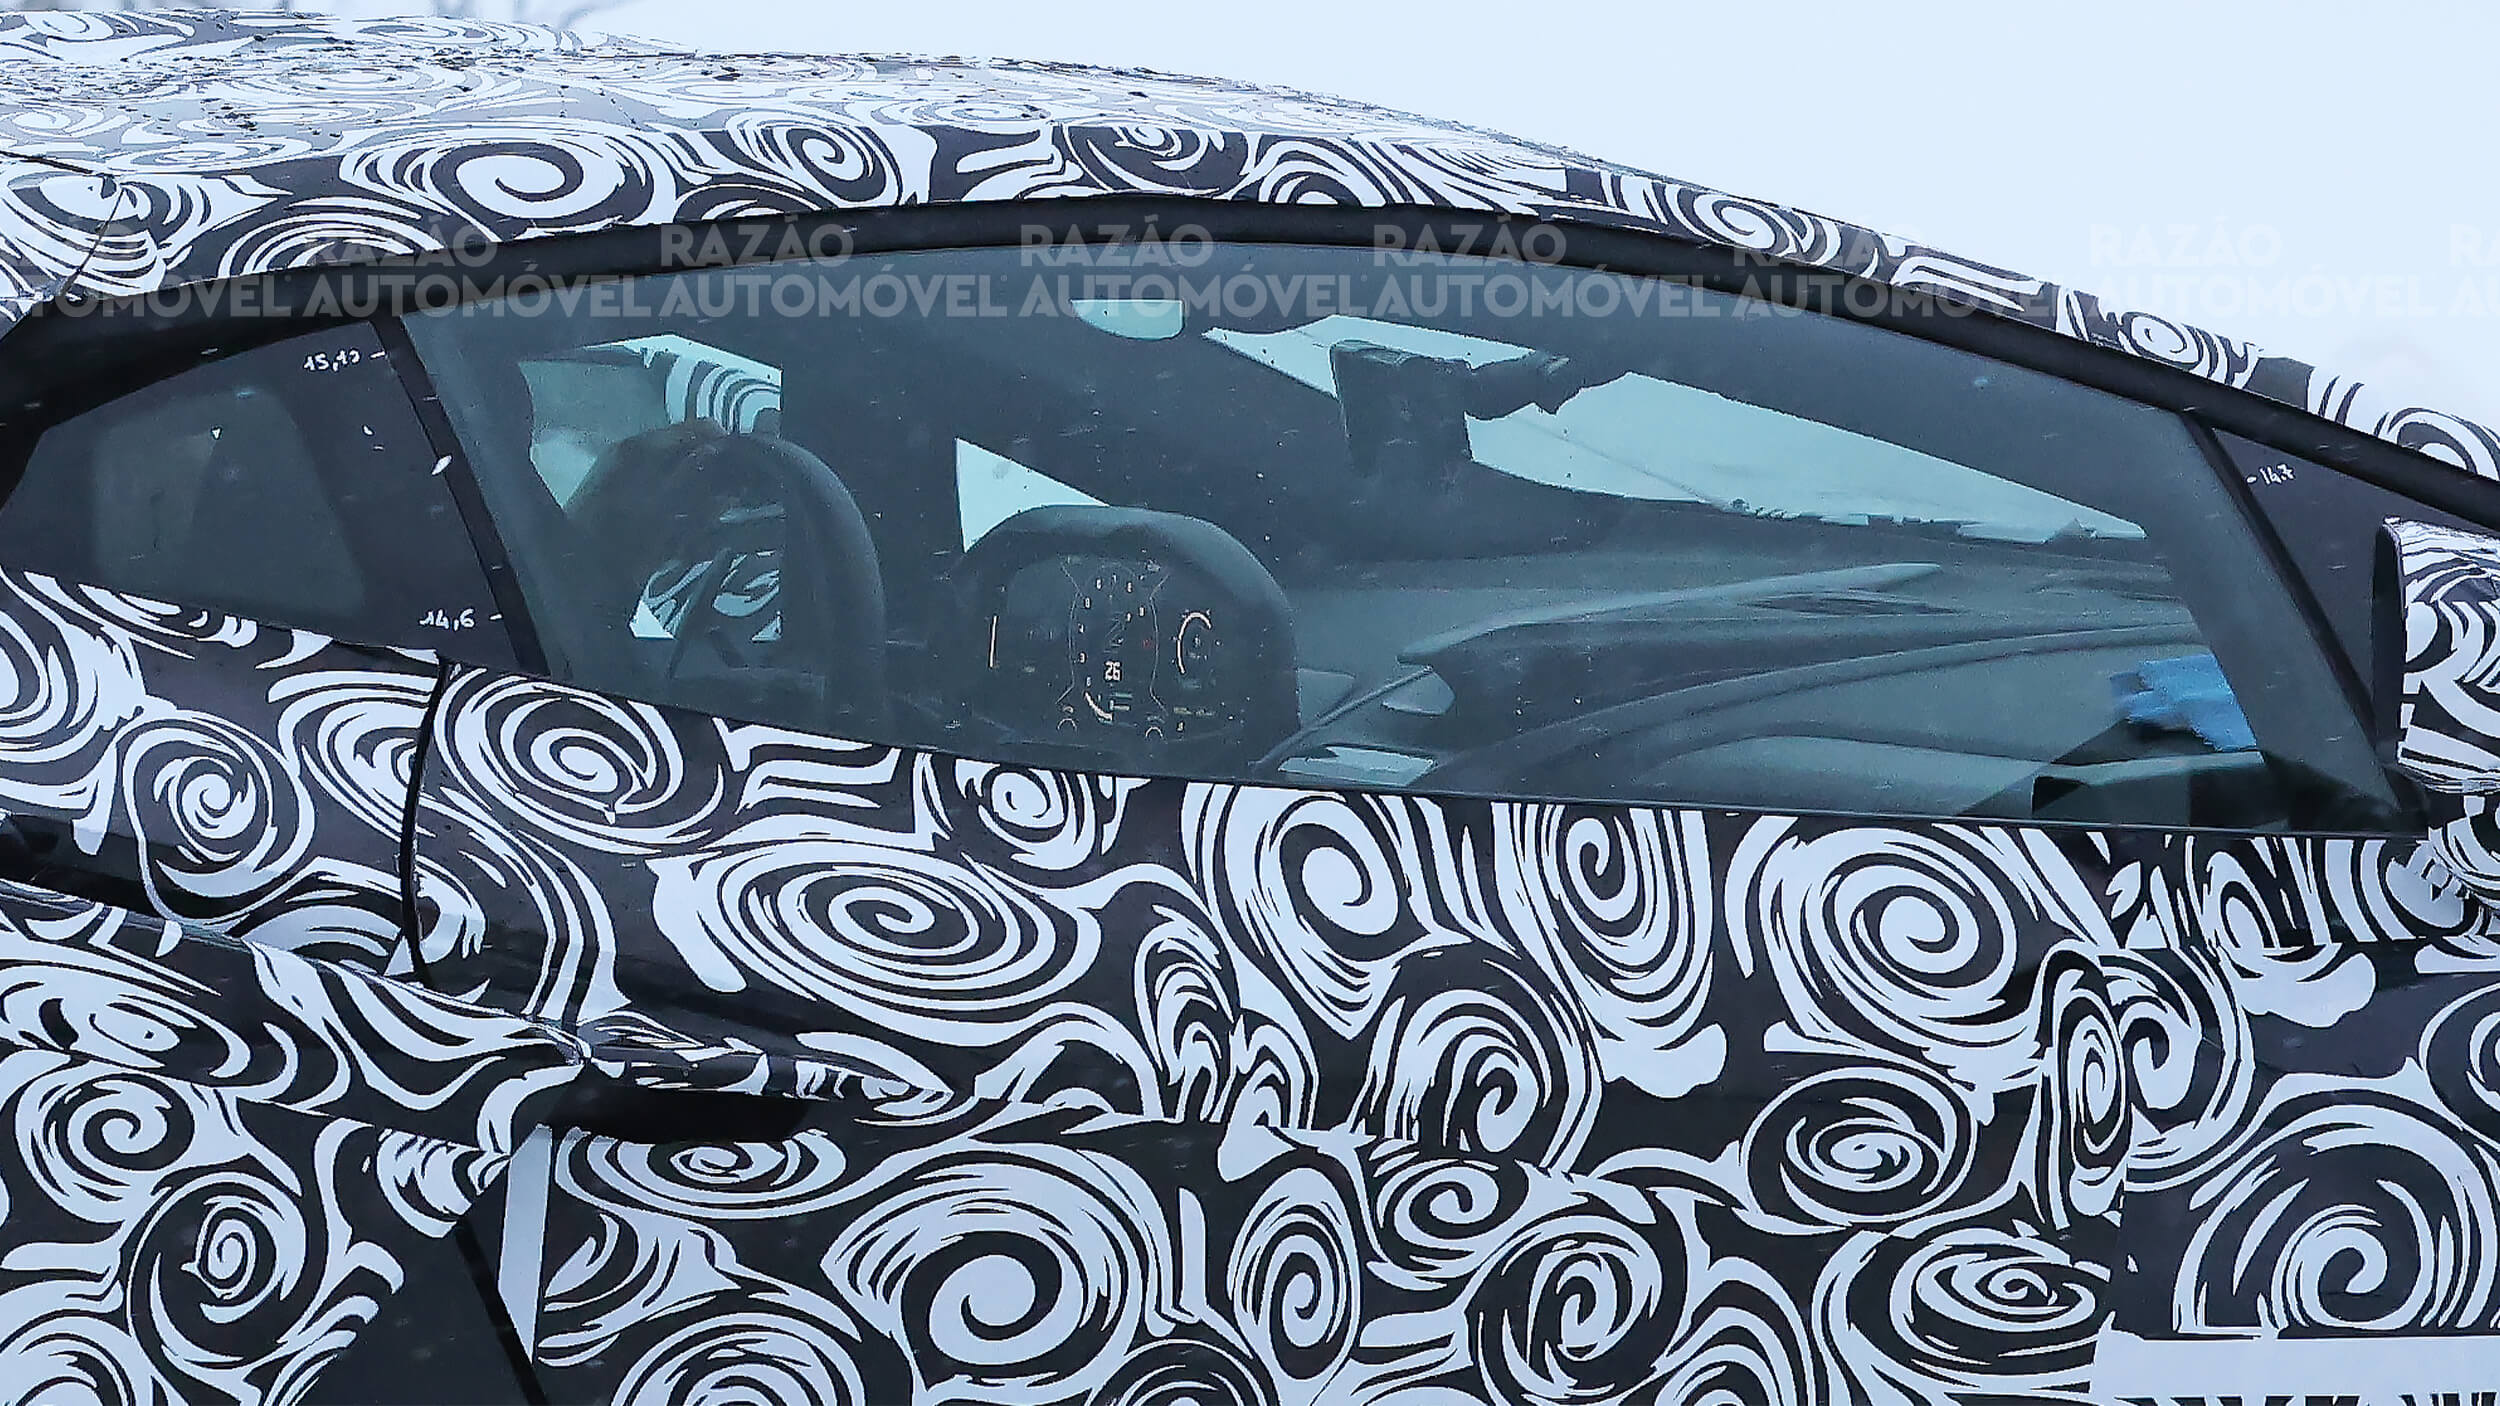 foto-espia do sucessor do Lamborghini Aventador que deixa ver parte do interior